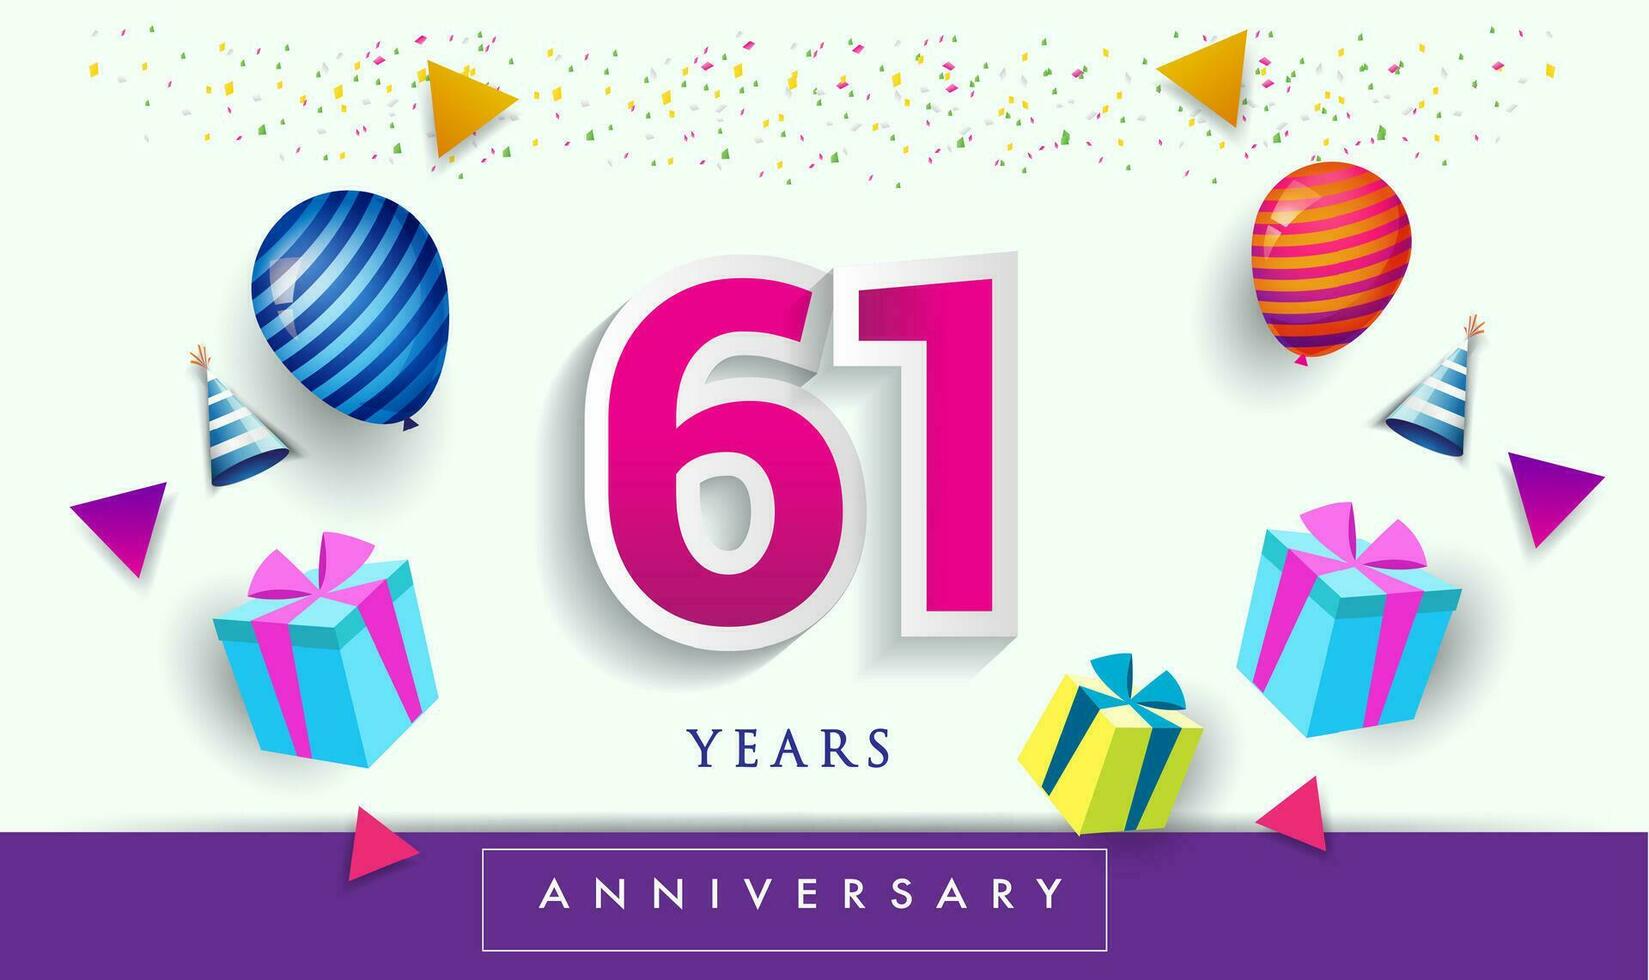 61º años aniversario celebracion diseño, con regalo caja y globos, cinta, vistoso vector modelo elementos para tu cumpleaños celebrando fiesta.